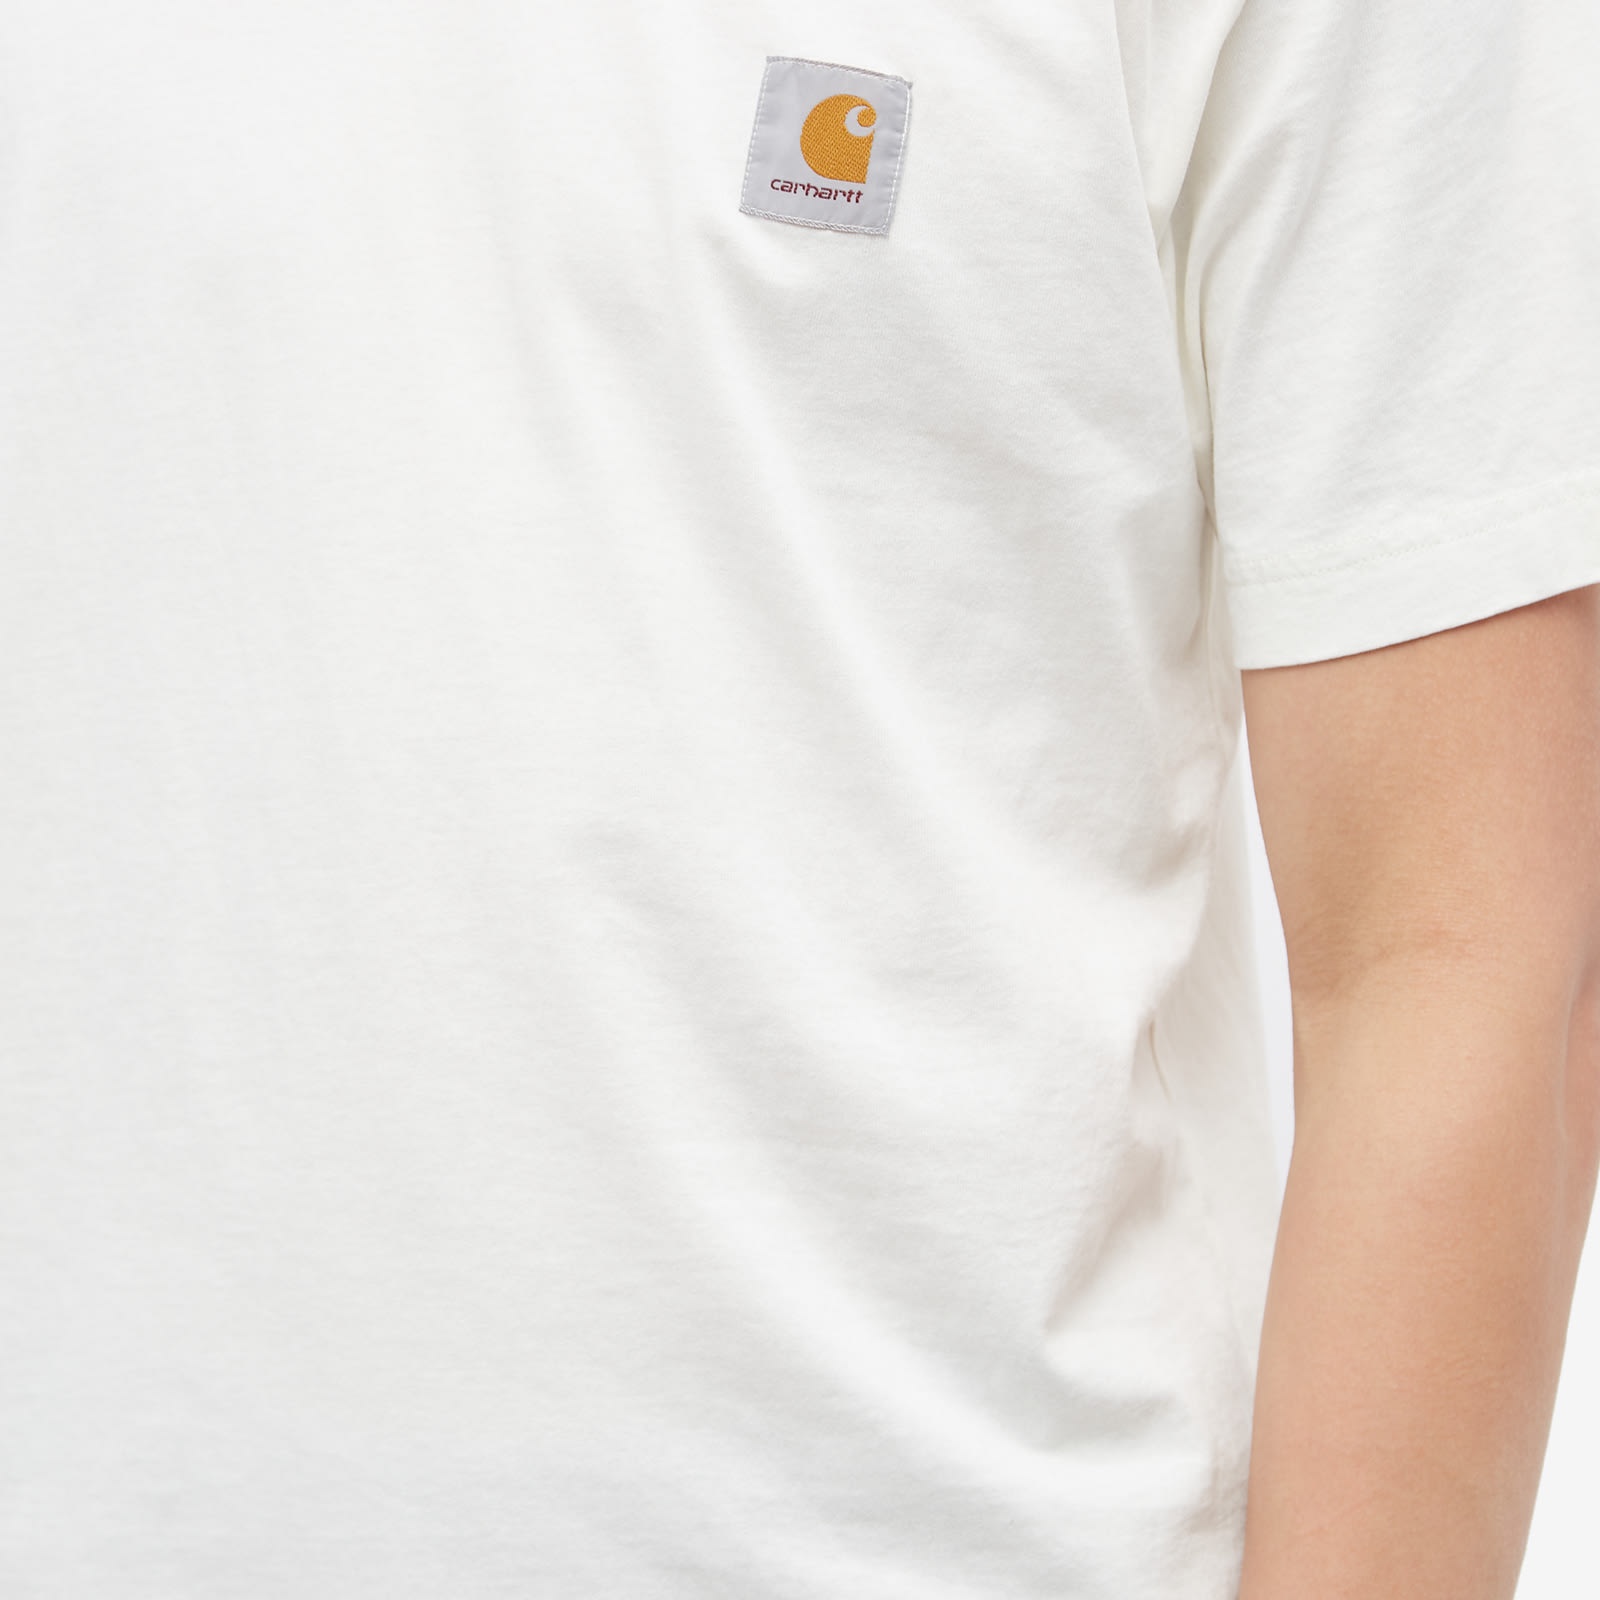 Carhartt WIP Nelson T-Shirt - 5